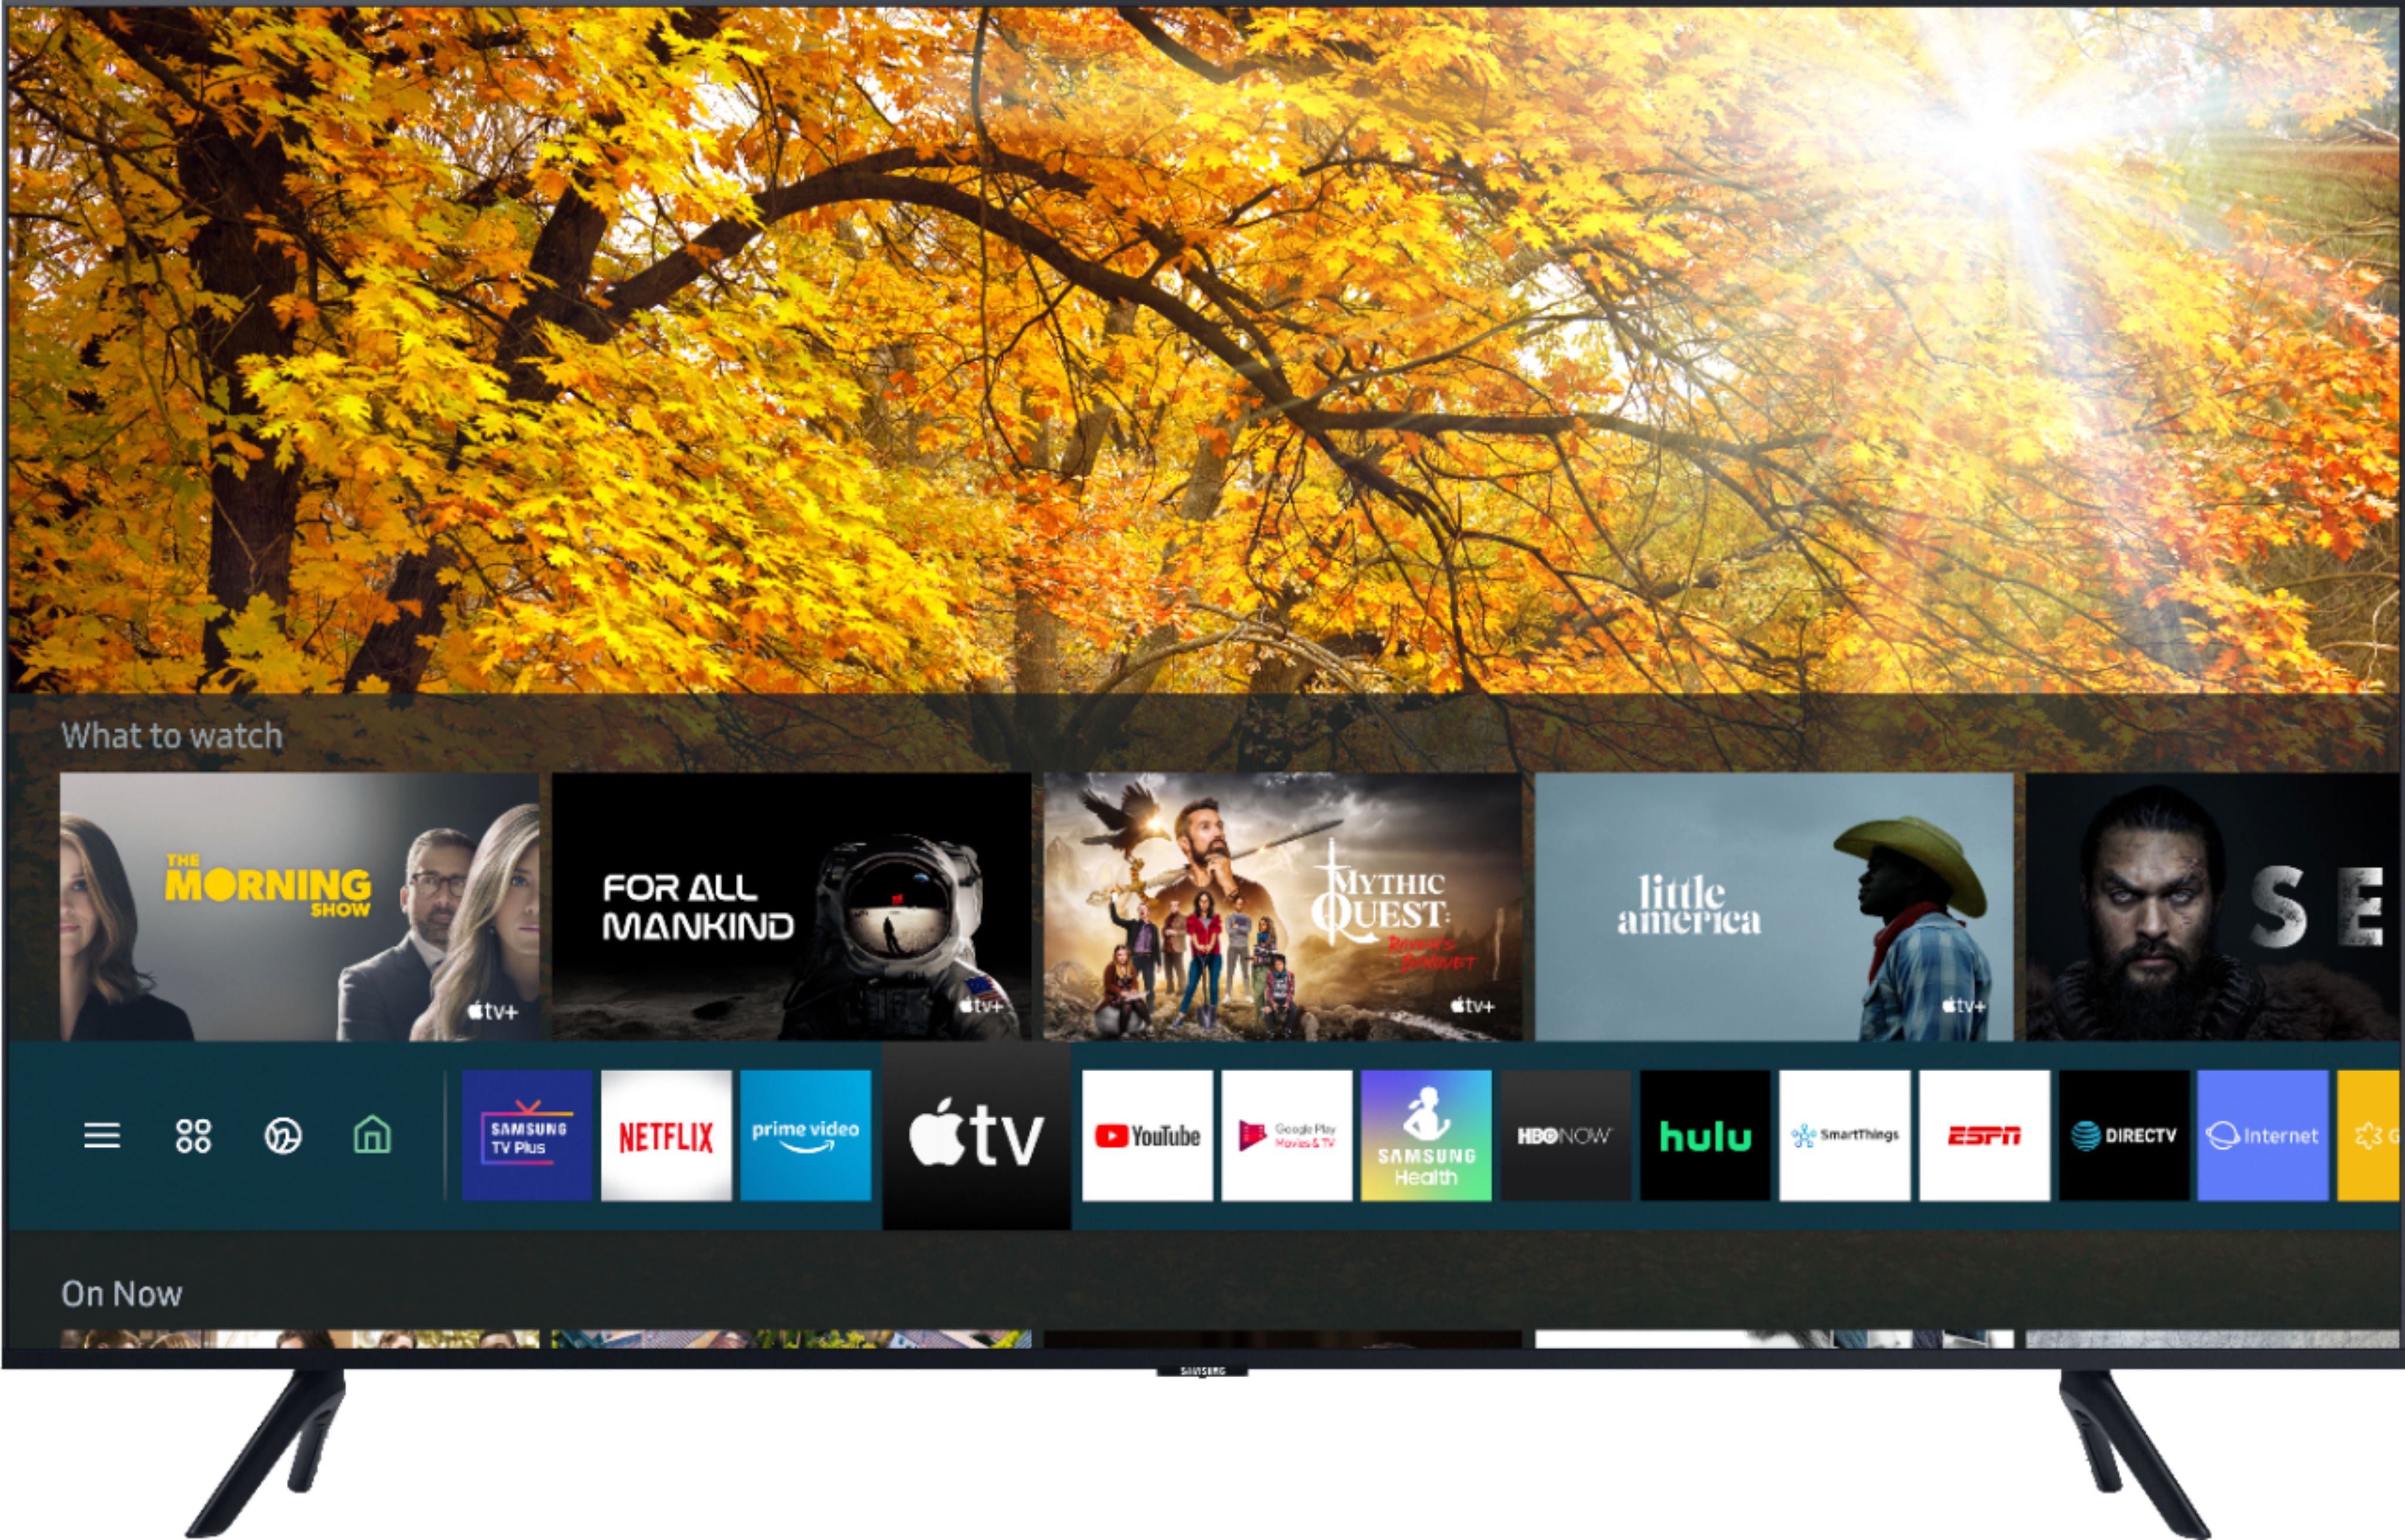 Customer Reviews Samsung 43 Class 8 Series Led 4k Uhd Smart Tizen Tv